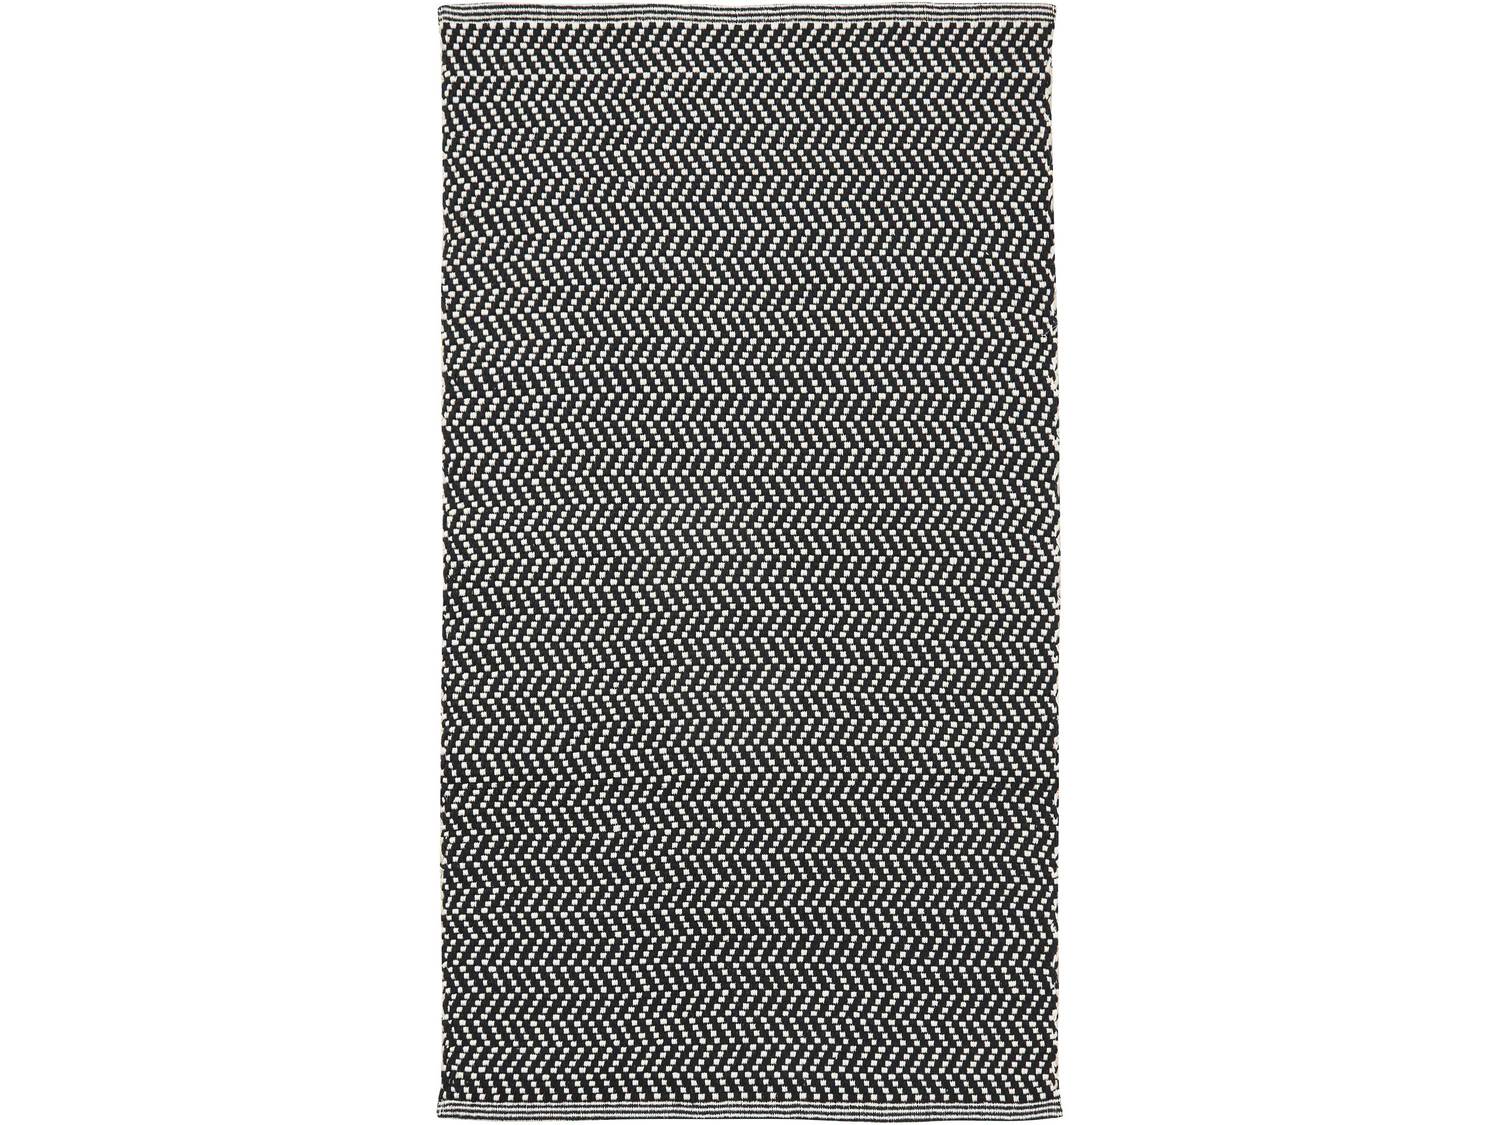 Dwustronny dywan Meradiso, cena 29,99 PLN  
-  100% bawełny 150 x 200 cm